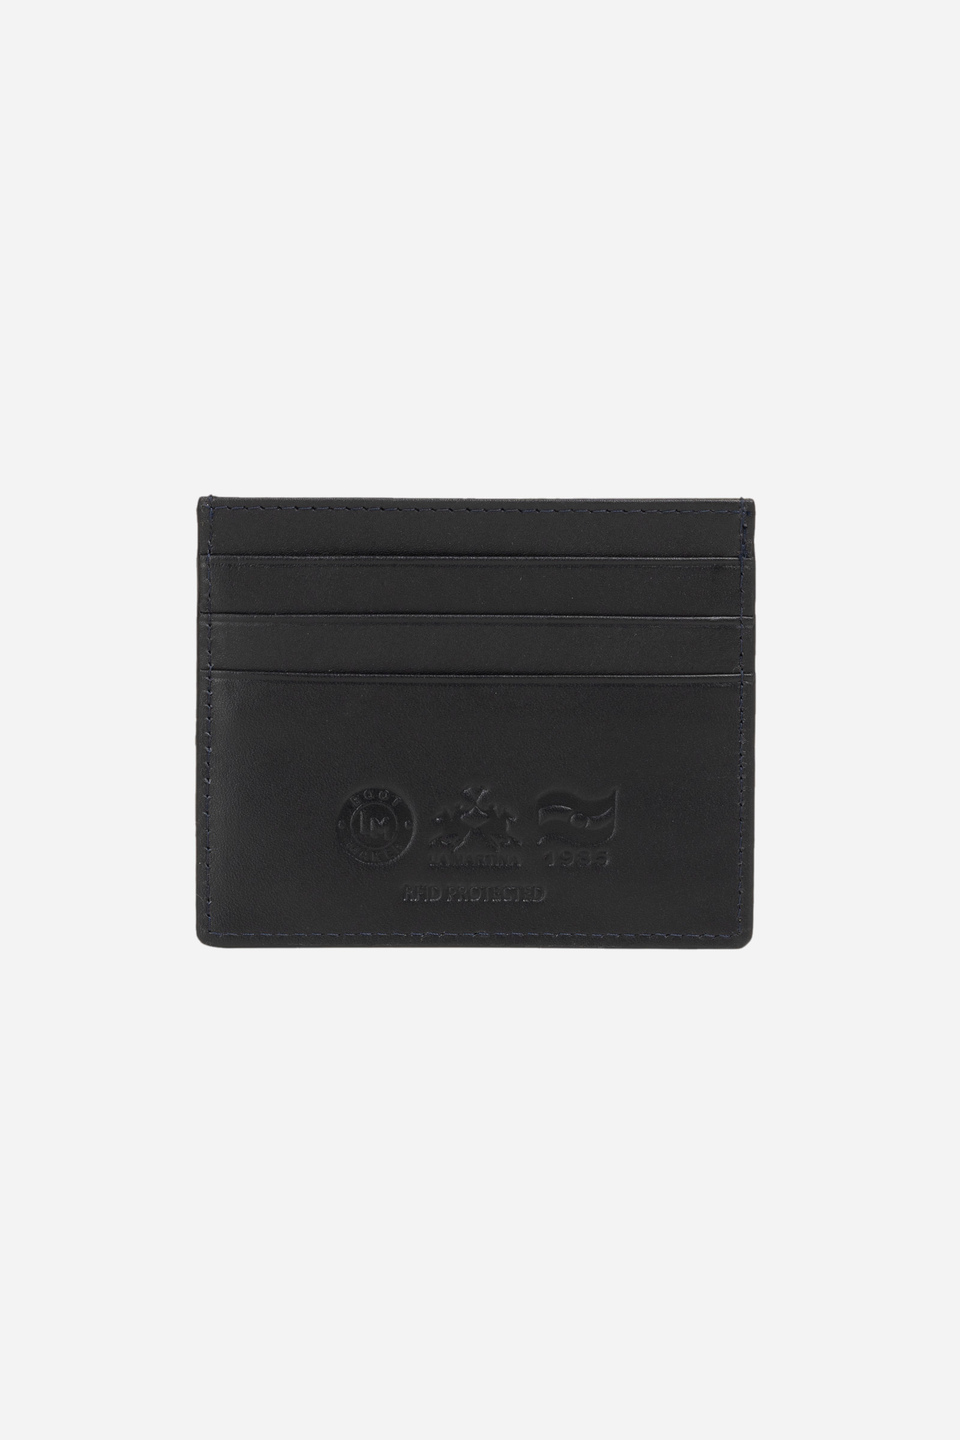 Leather card holder - Pablo | La Martina - Official Online Shop